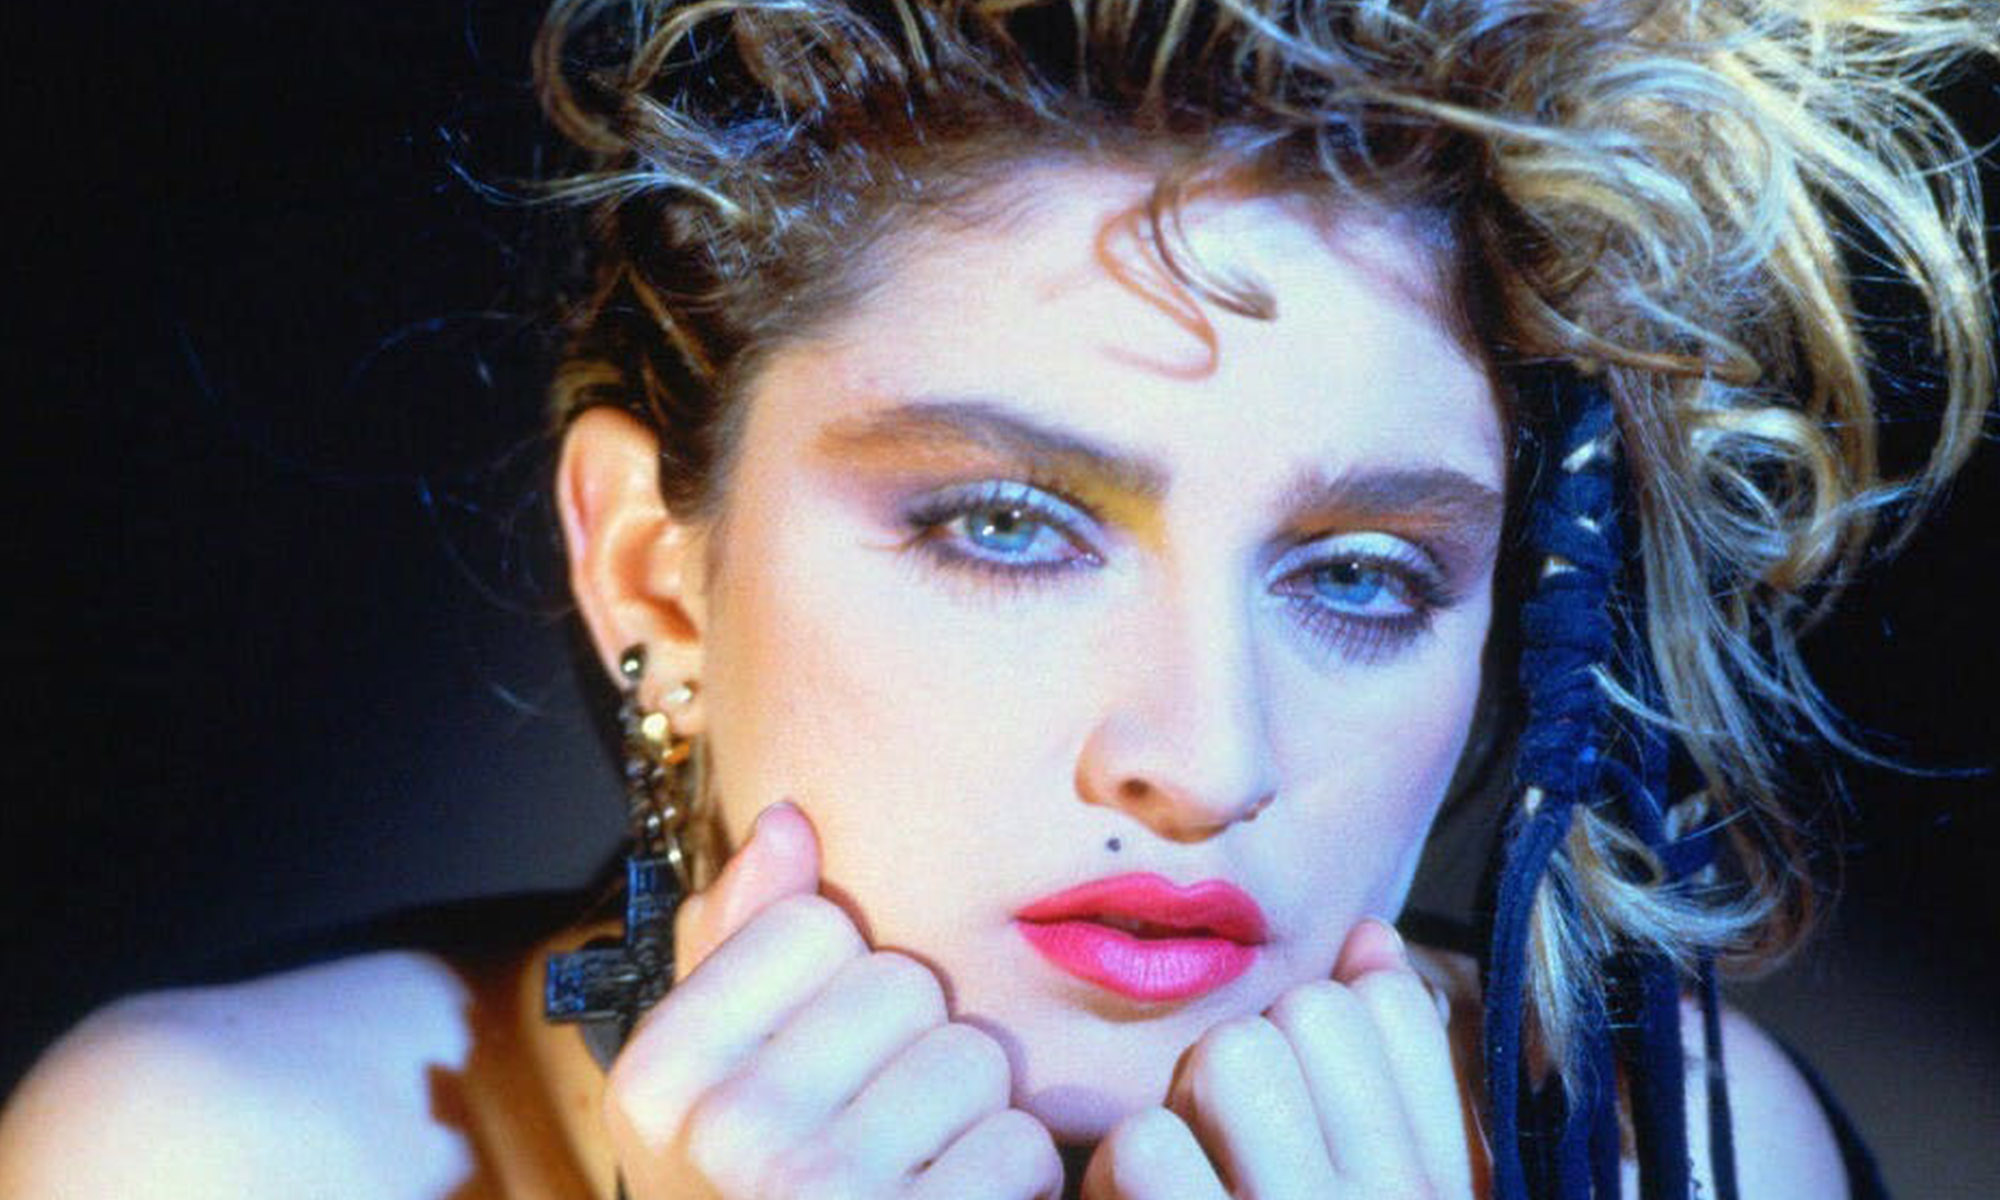 Sängerin Madonna